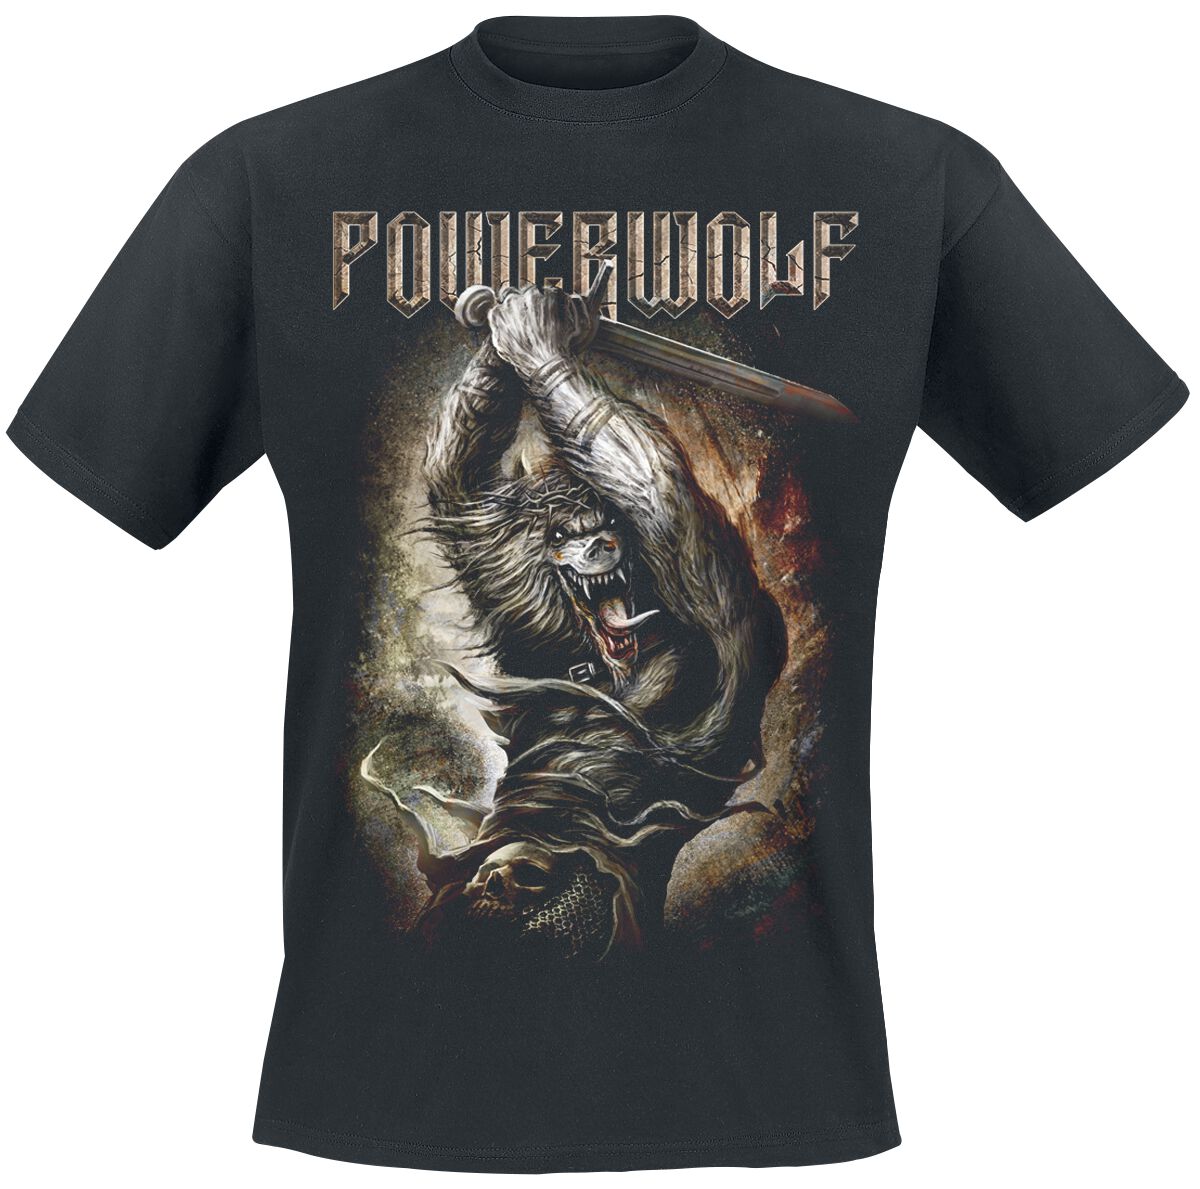 Powerwolf T-Shirt - Wolves Of War - S bis 5XL - für Männer - Größe 4XL - schwarz  - Lizenziertes Merchandise!